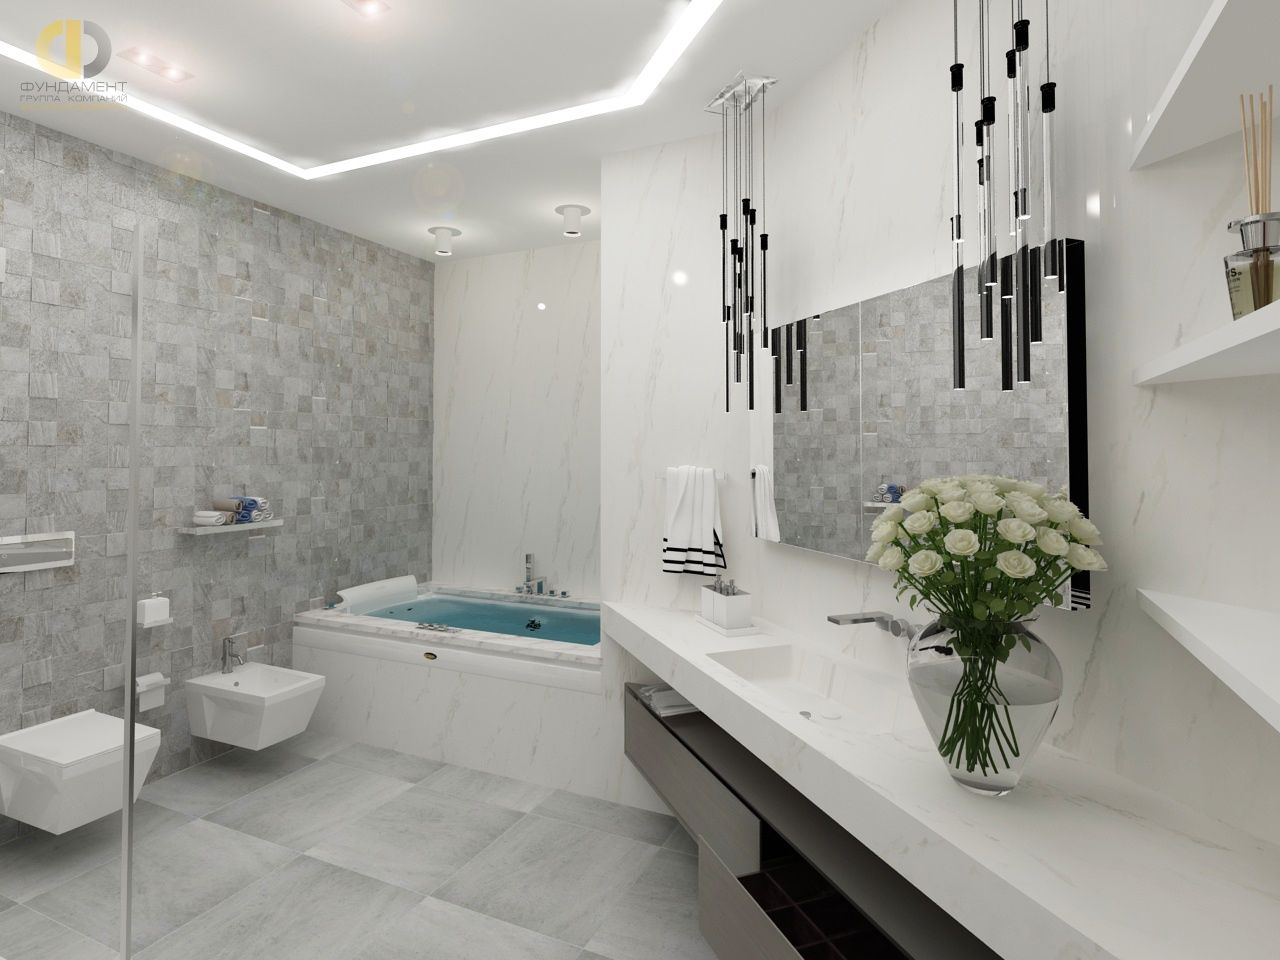 Ванная комната варианты дизайна обзор отделочных материалов правила выбора и установки сантехники